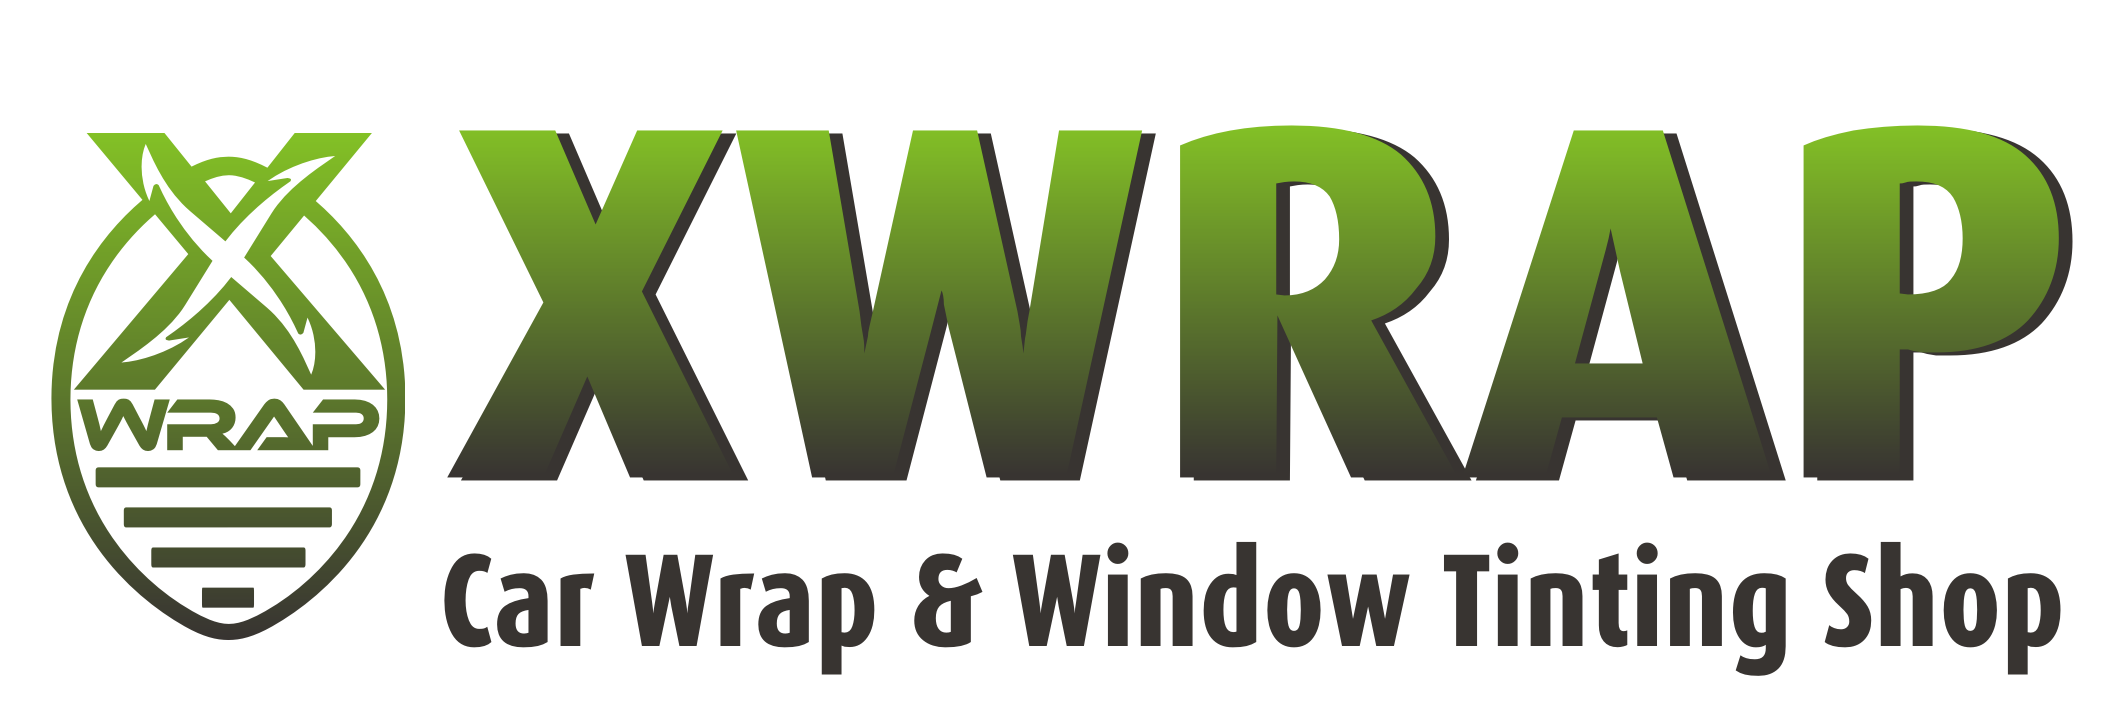 Xwrap Logo